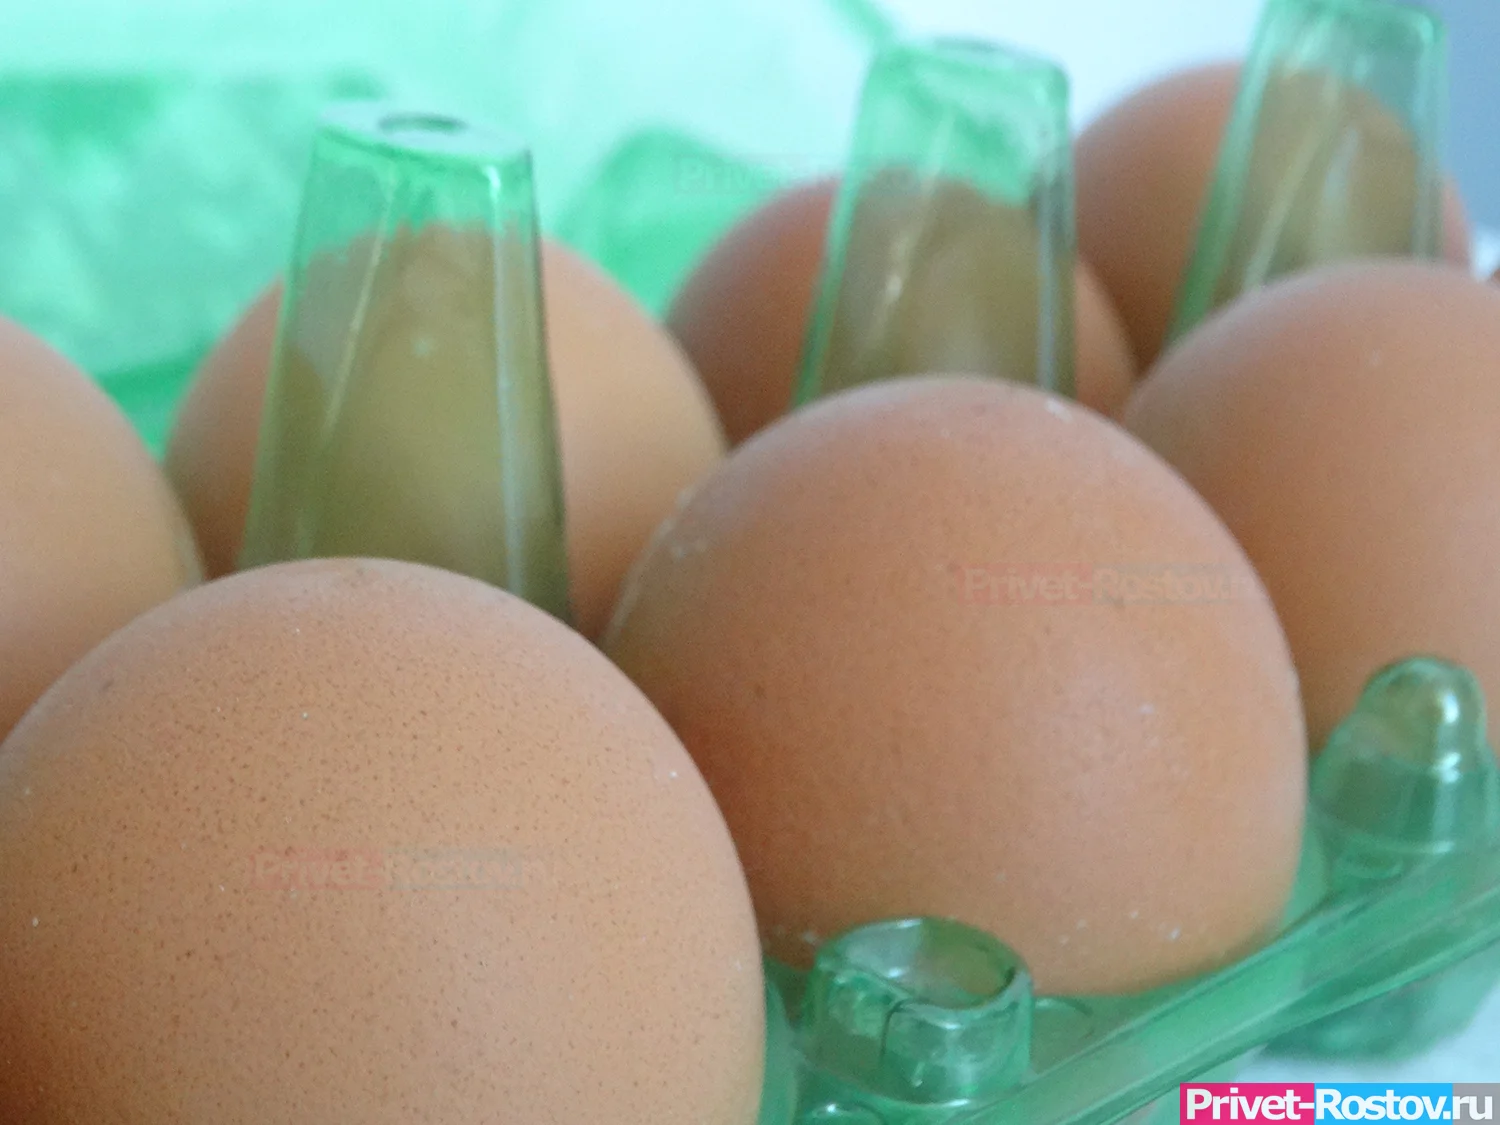 ФАС рекомендовала торговым сетям ограничить наценку на яйца